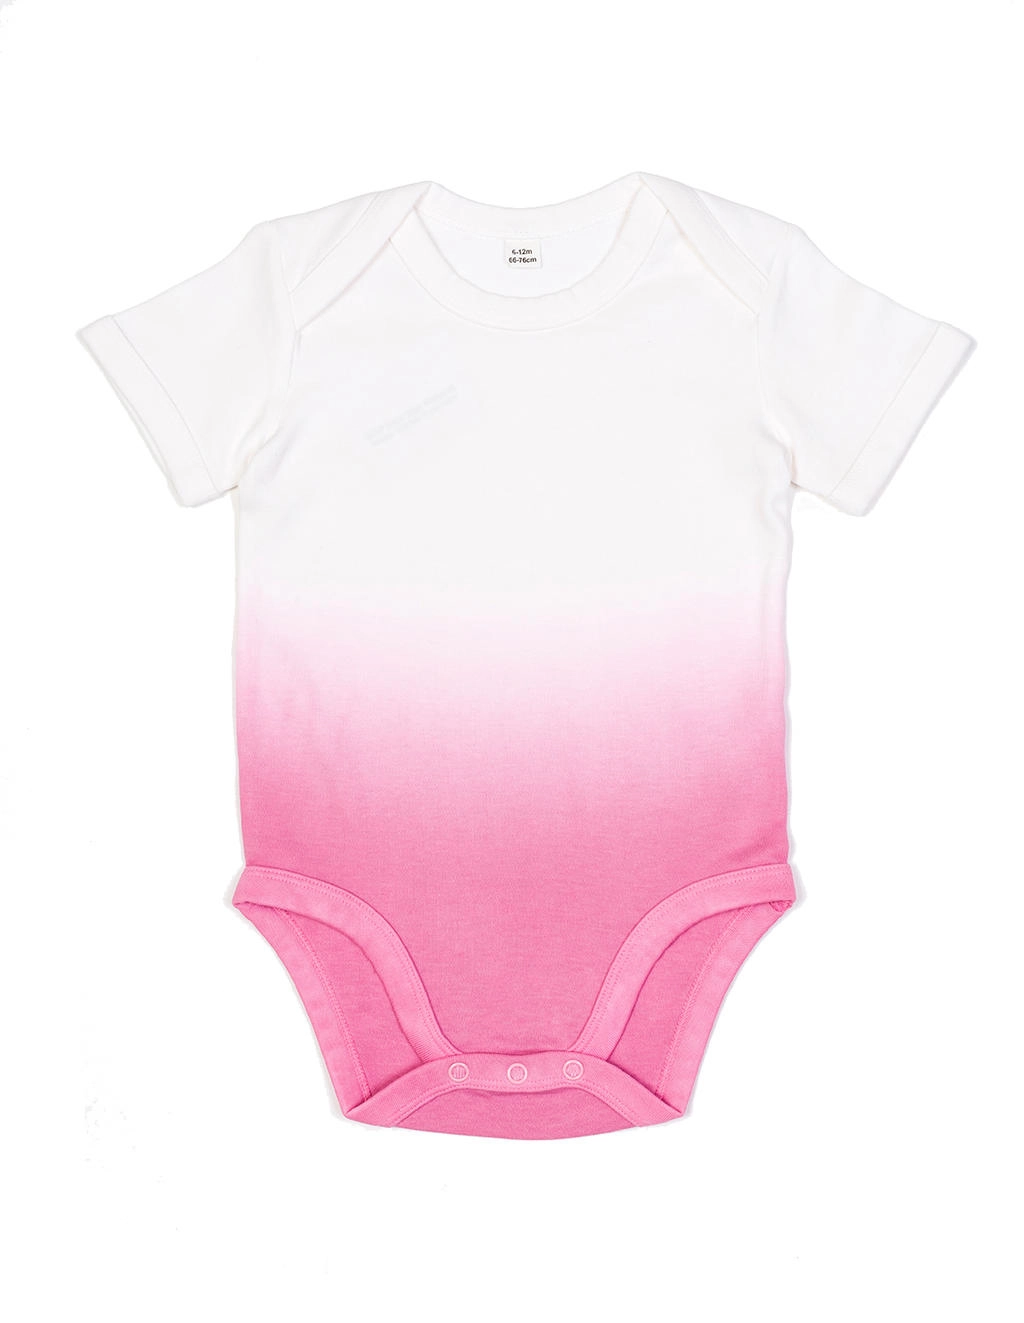 Baby Dips Bodysuit zum Besticken und Bedrucken in der Farbe White/Bubble Gum Pink mit Ihren Logo, Schriftzug oder Motiv.